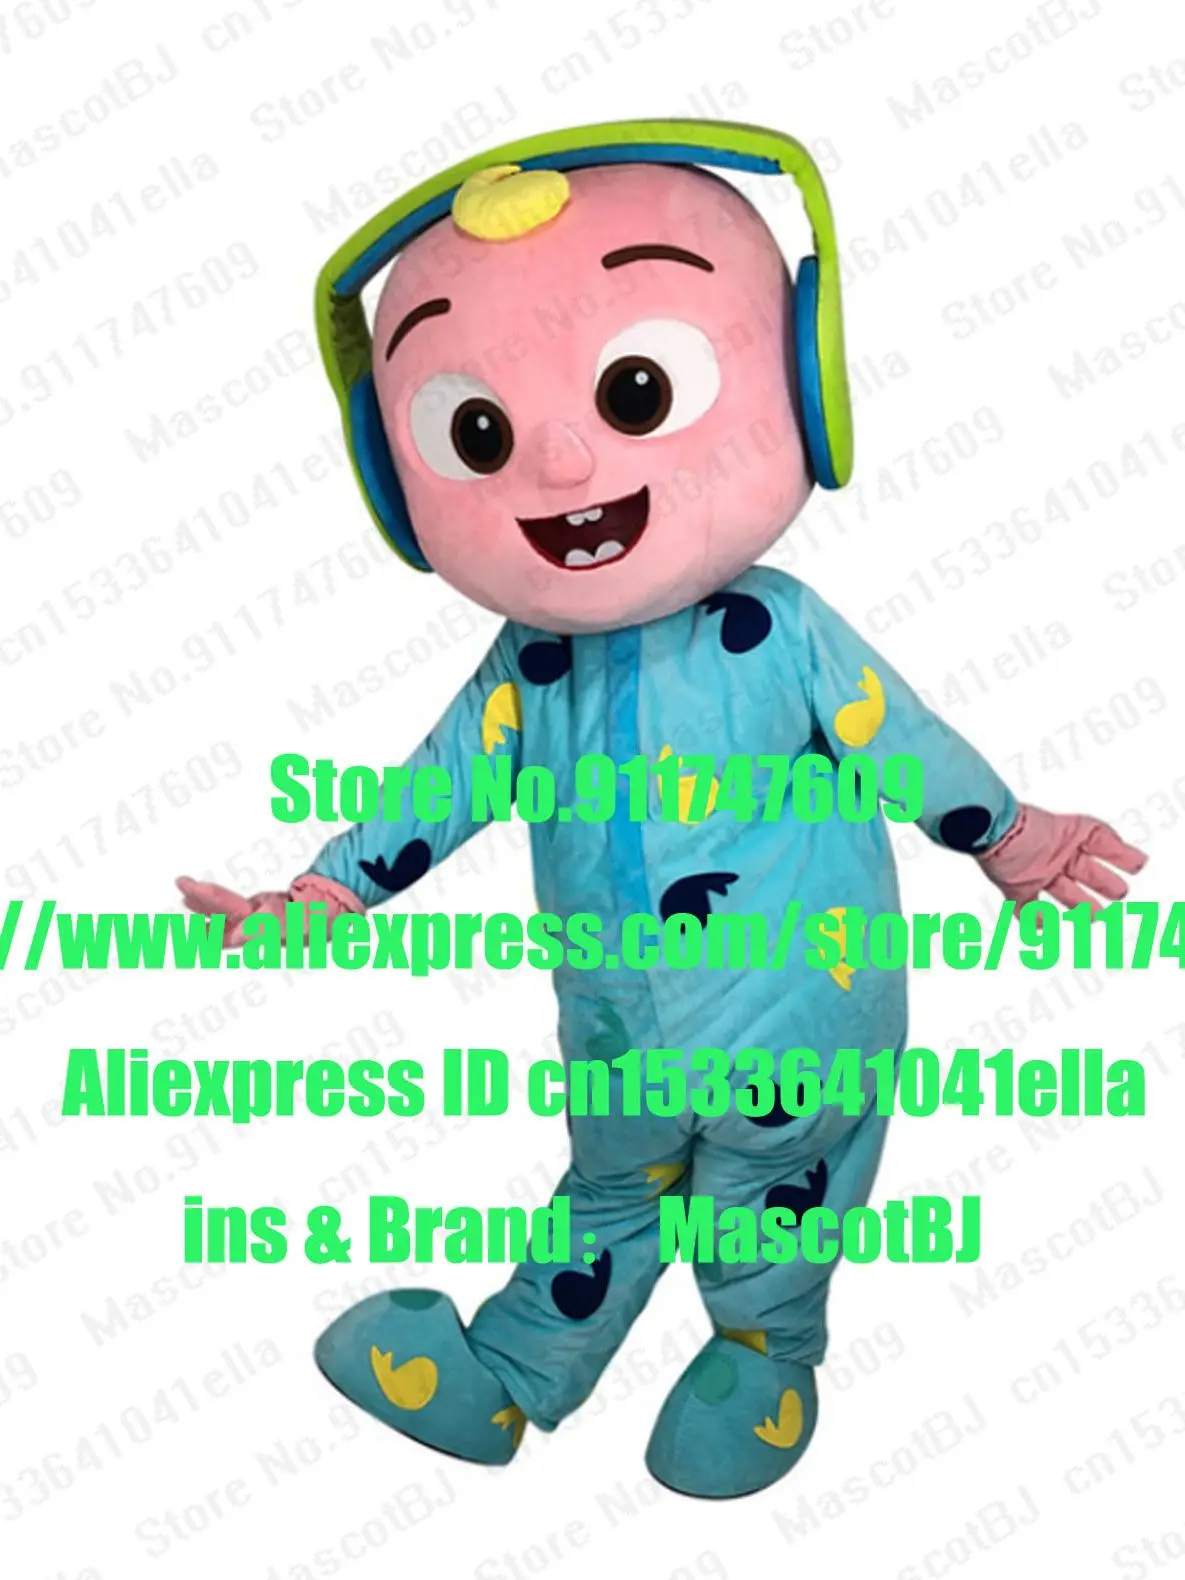 Cocomelon Free Fans Headset Baby Jj Mascot Costume Adult Cartoon Character Size Xxs S M L Xl Xxl 3xl 5xl Mascot Aliexpress